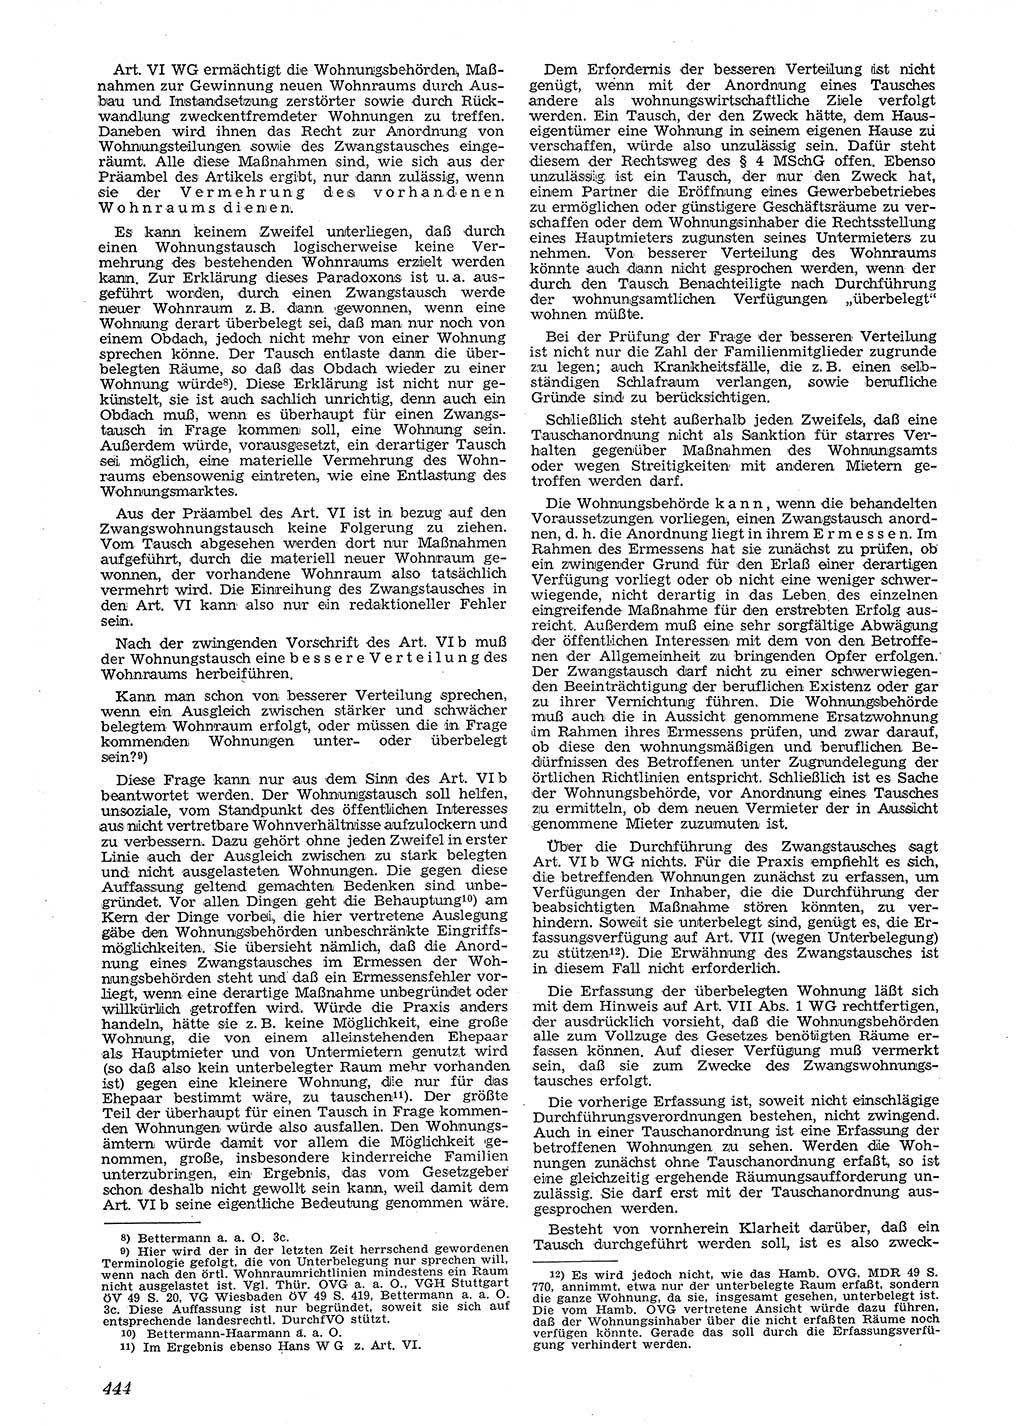 Neue Justiz (NJ), Zeitschrift für Recht und Rechtswissenschaft [Deutsche Demokratische Republik (DDR)], 4. Jahrgang 1950, Seite 444 (NJ DDR 1950, S. 444)